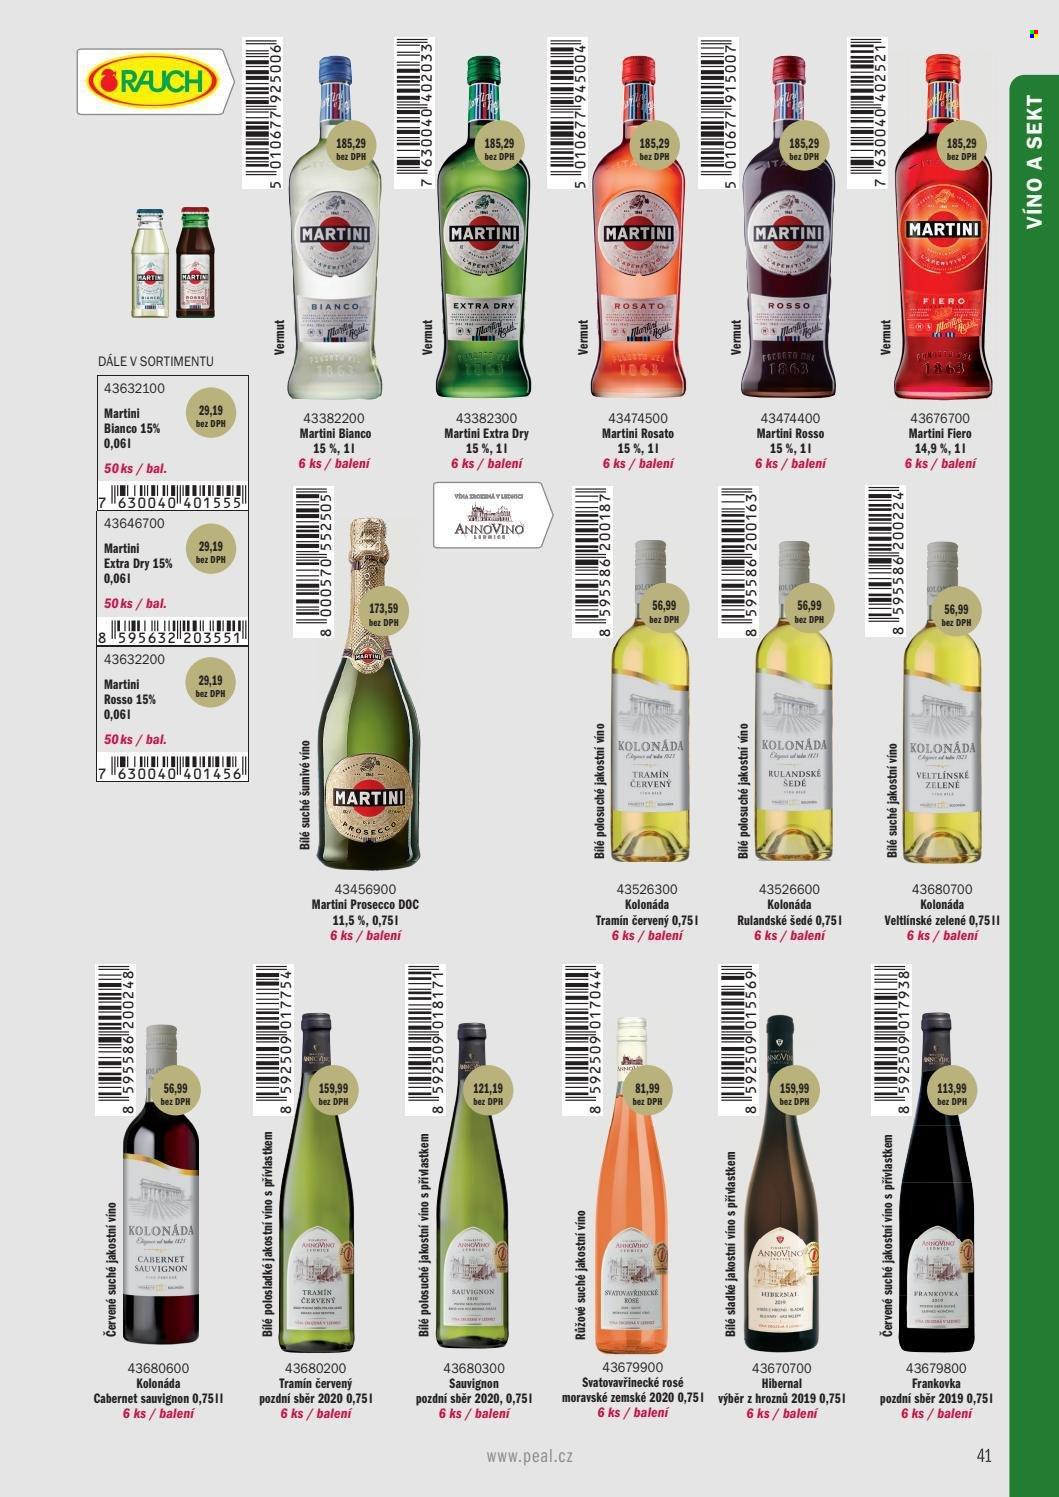 thumbnail - Leták PEAL - Produkty v akci - oplatky, Kolonáda, Rauch, alkohol, sekt, Rulandské šedé, Tramín červený, Prosecco, růžové víno, Svatovavřinecké, Frankovka, Veltlínské zelené, Cabernet Sauvignon, Hibernal, šumivé víno, Martini, vermouth. Strana 31.